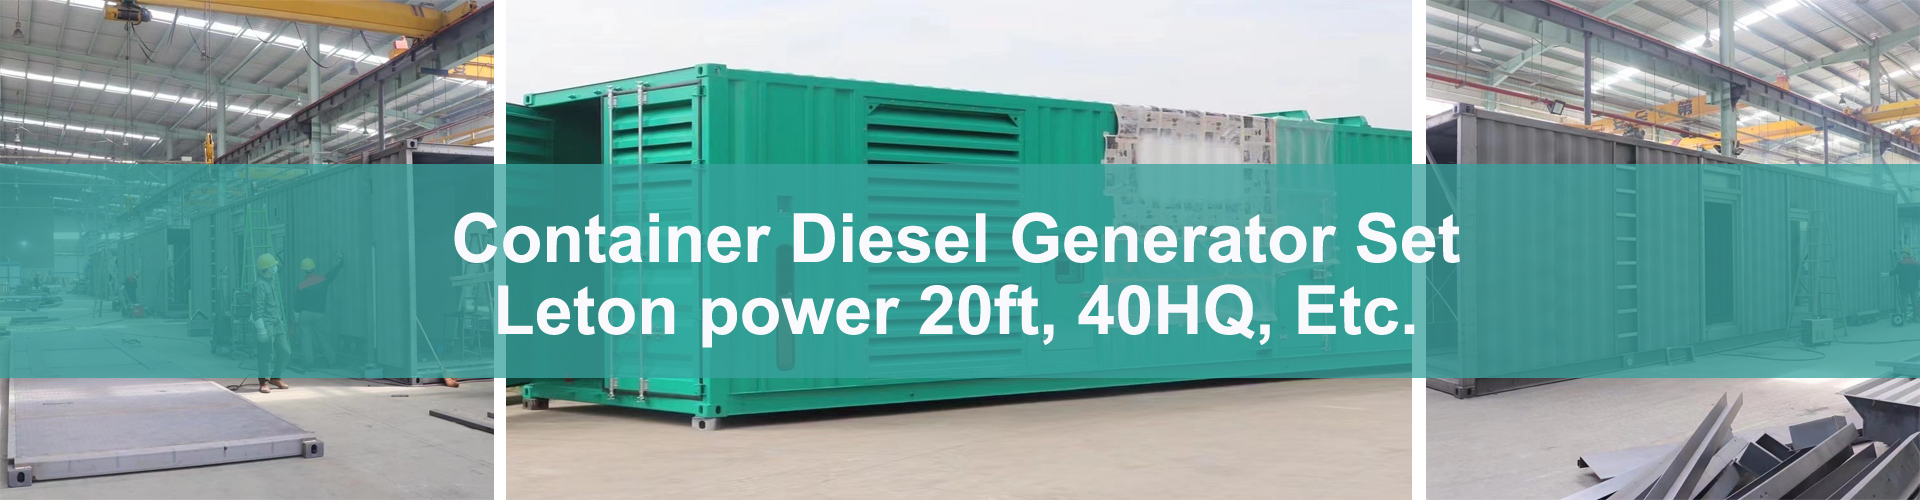 контейнер для дизель-генератора